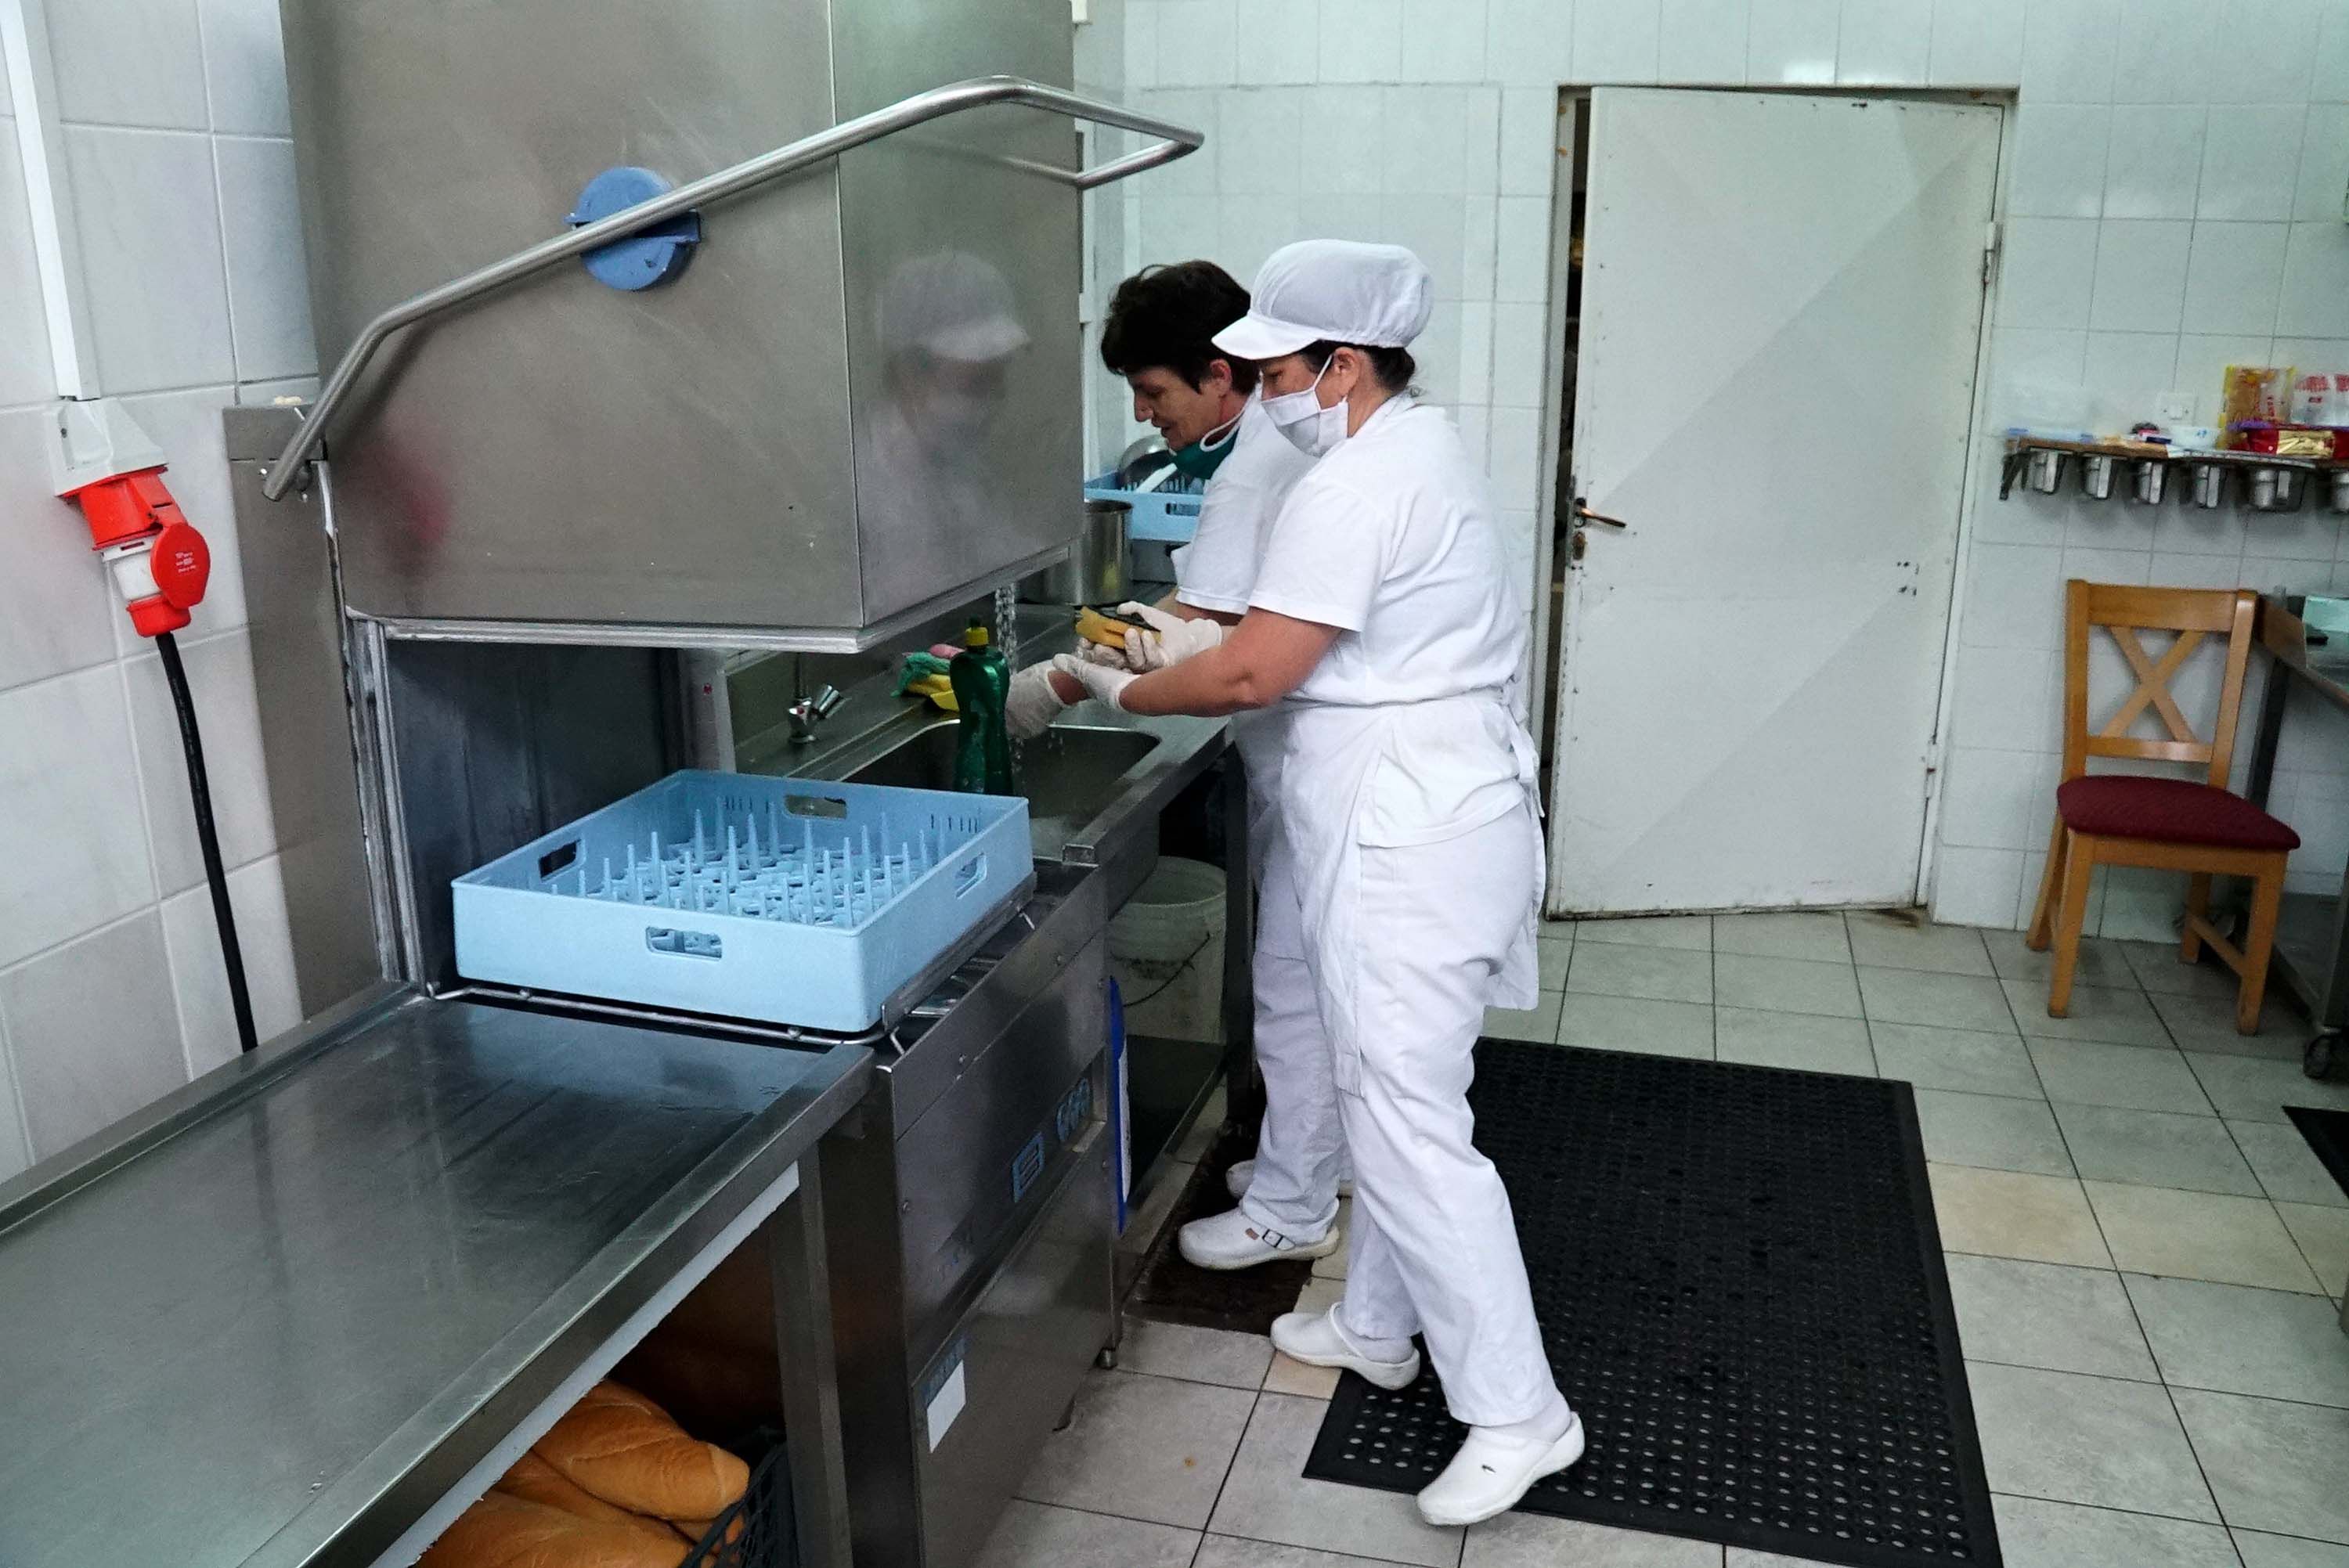 Mostarske javne kuhinje u 'koroni' dnevno pripremale više od 1000 obroka